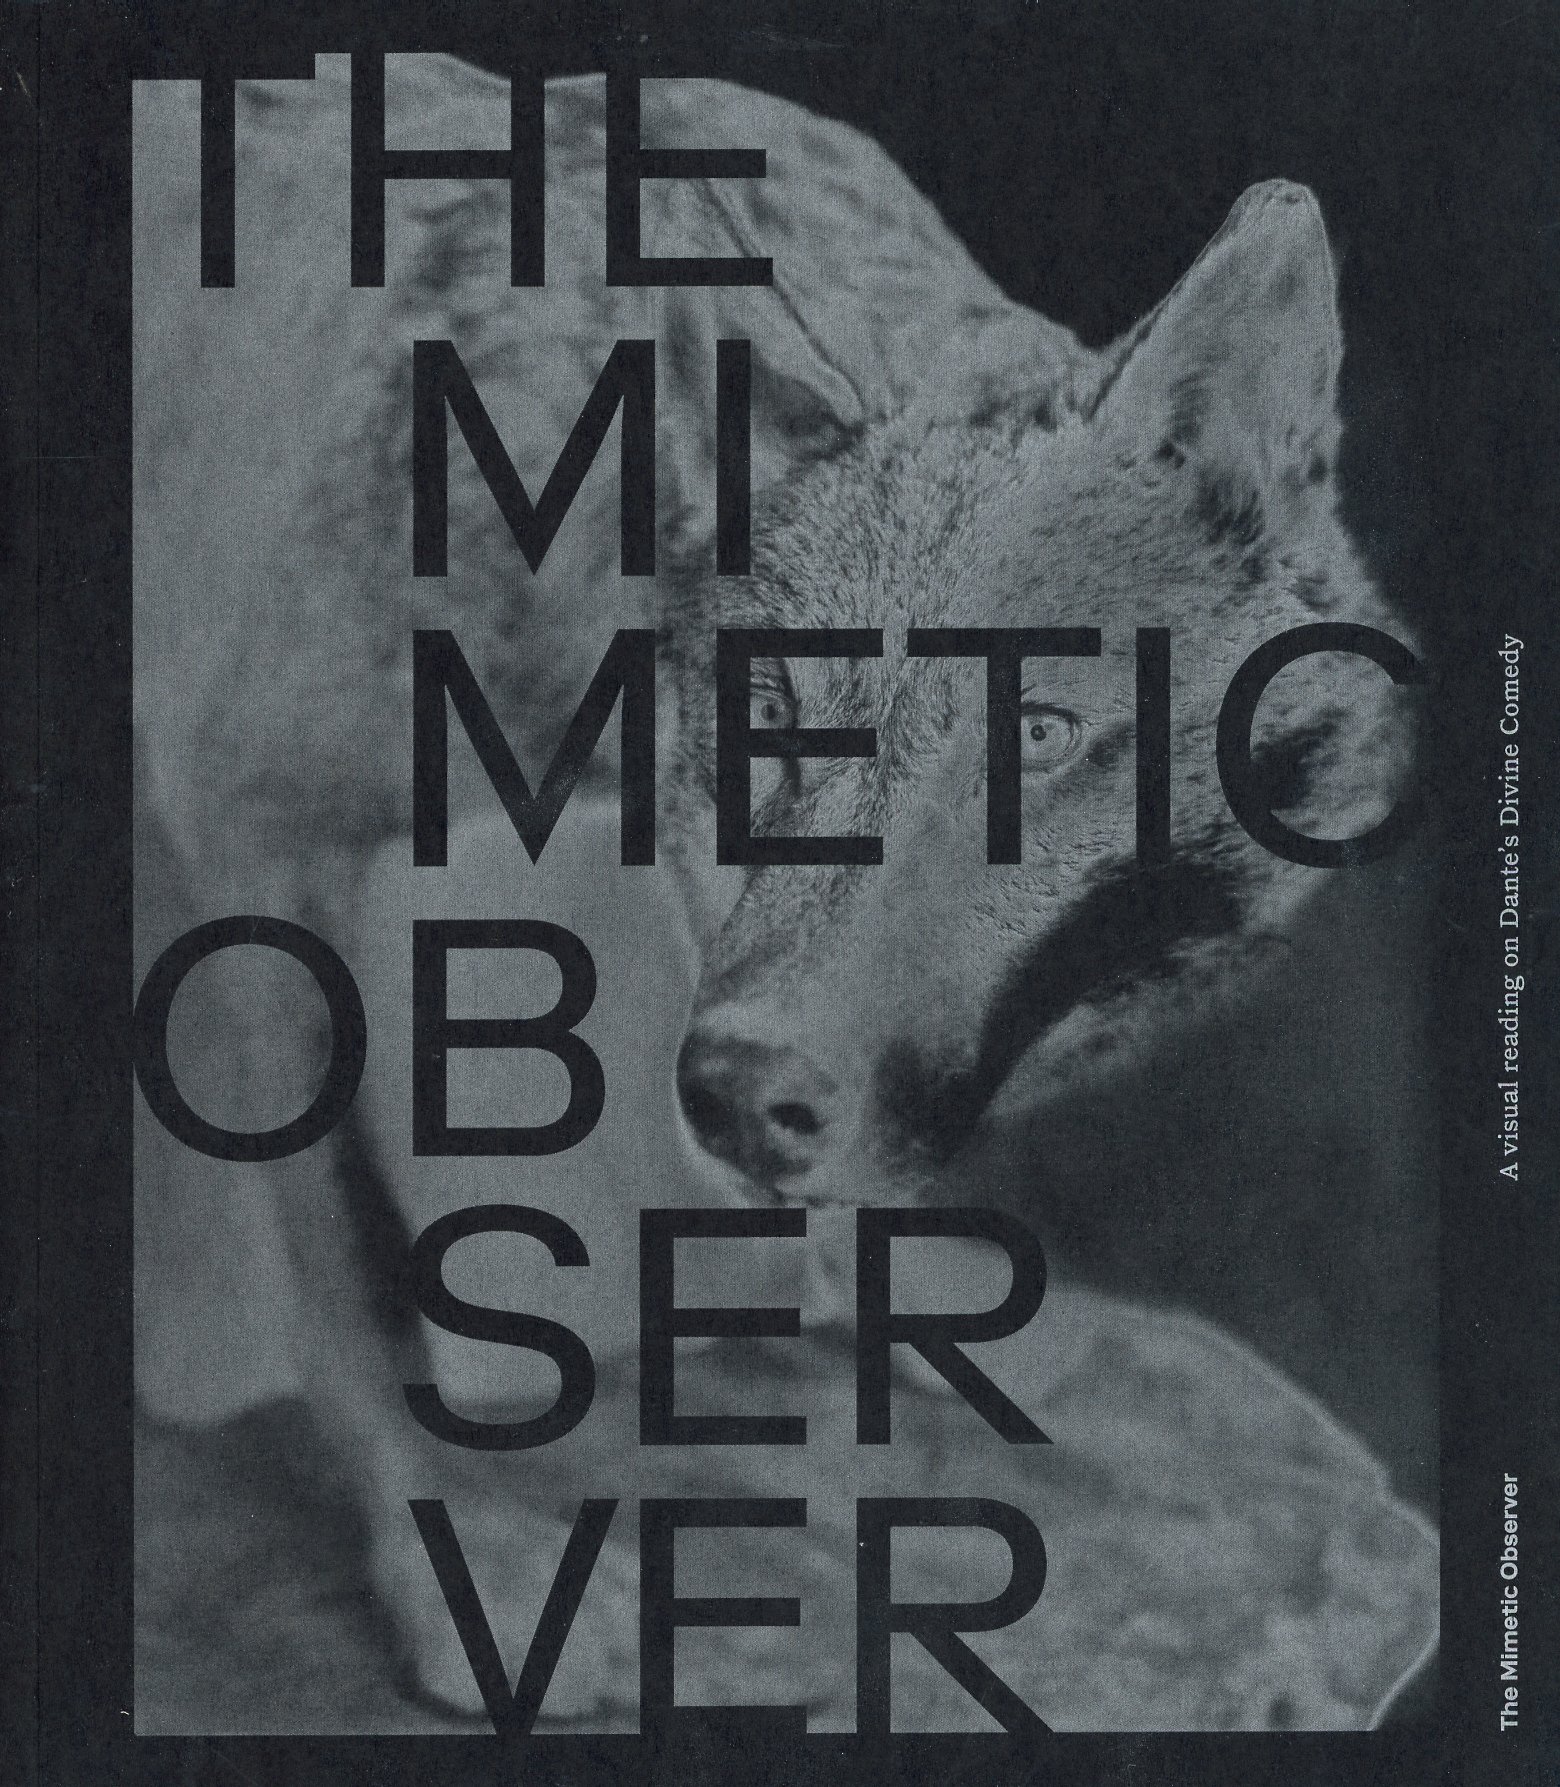 The Mimetic Observer: A Visual Reading on Dante’s Divine Comedy, Carlotta Valente and Joaquín Paredes